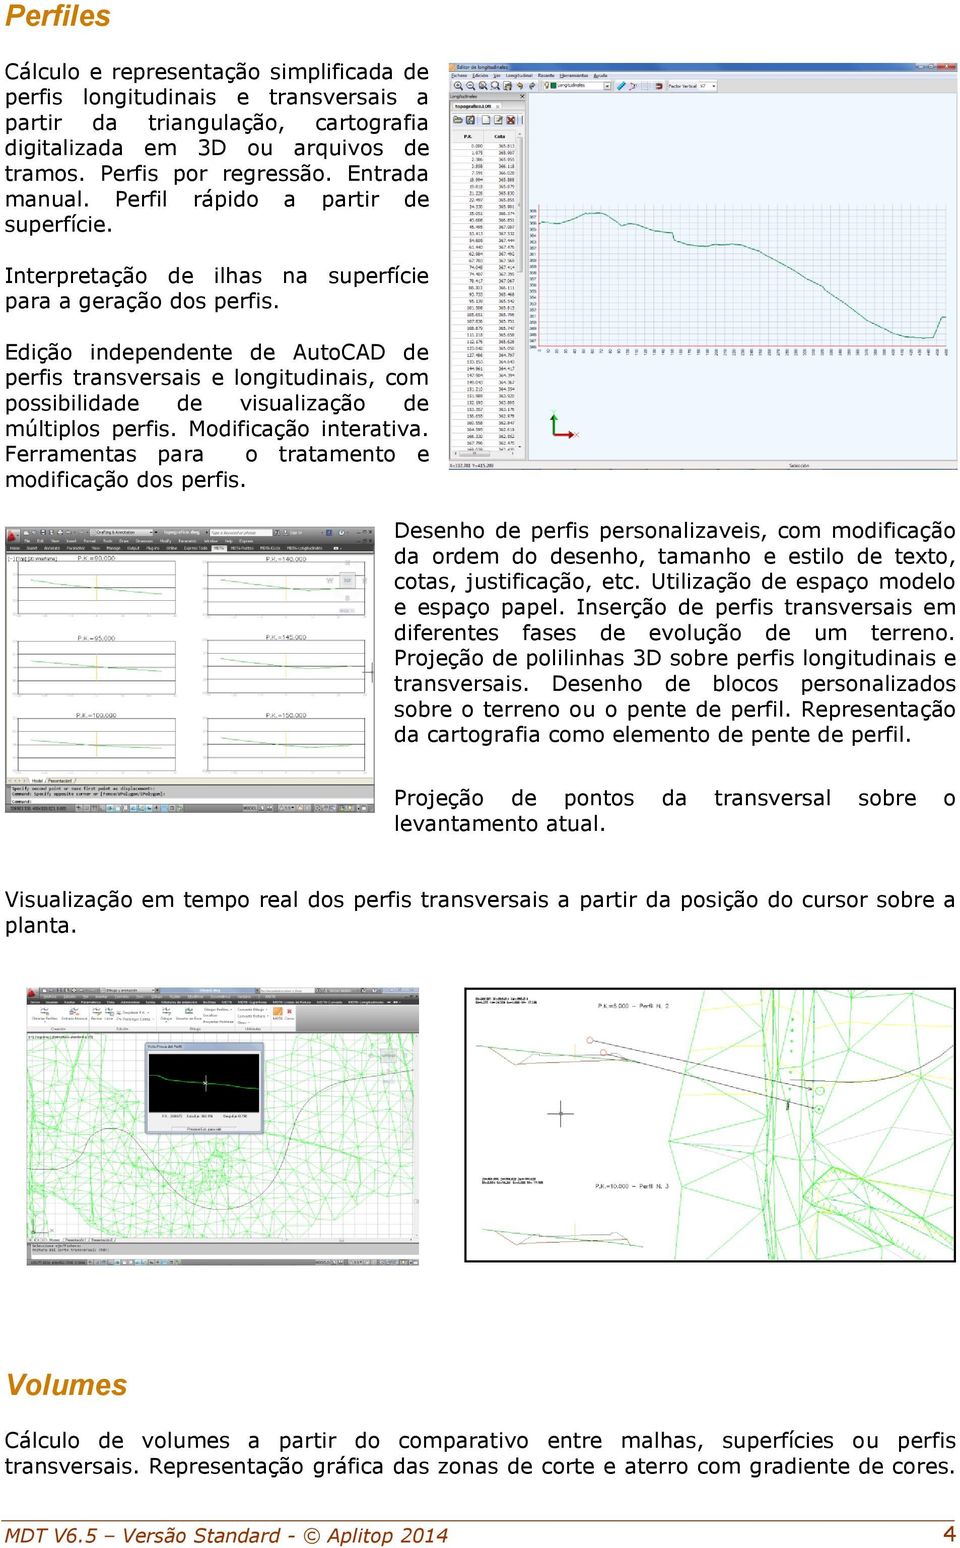 Edição independente de AutoCAD de perfis transversais e longitudinais, com possibilidade de visualização de múltiplos perfis. Modificação interativa.